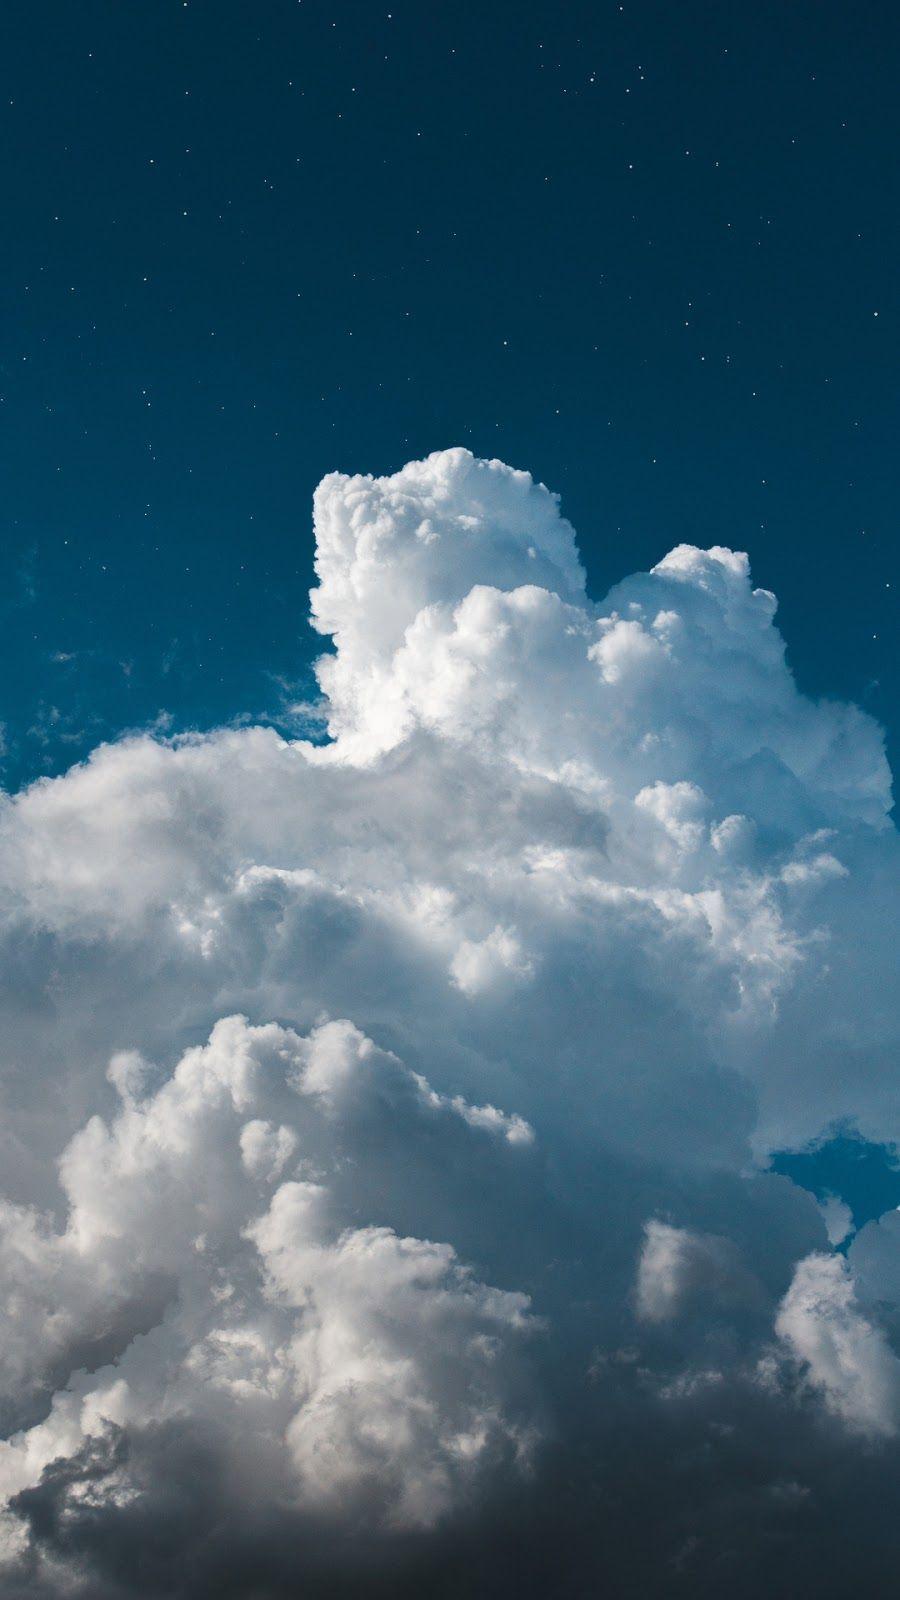 Đám mây đã và đang trở thành một chủ đề yêu thích của các nhiếp ảnh gia trong những năm gần đây. Những hình ảnh liên quan tới \